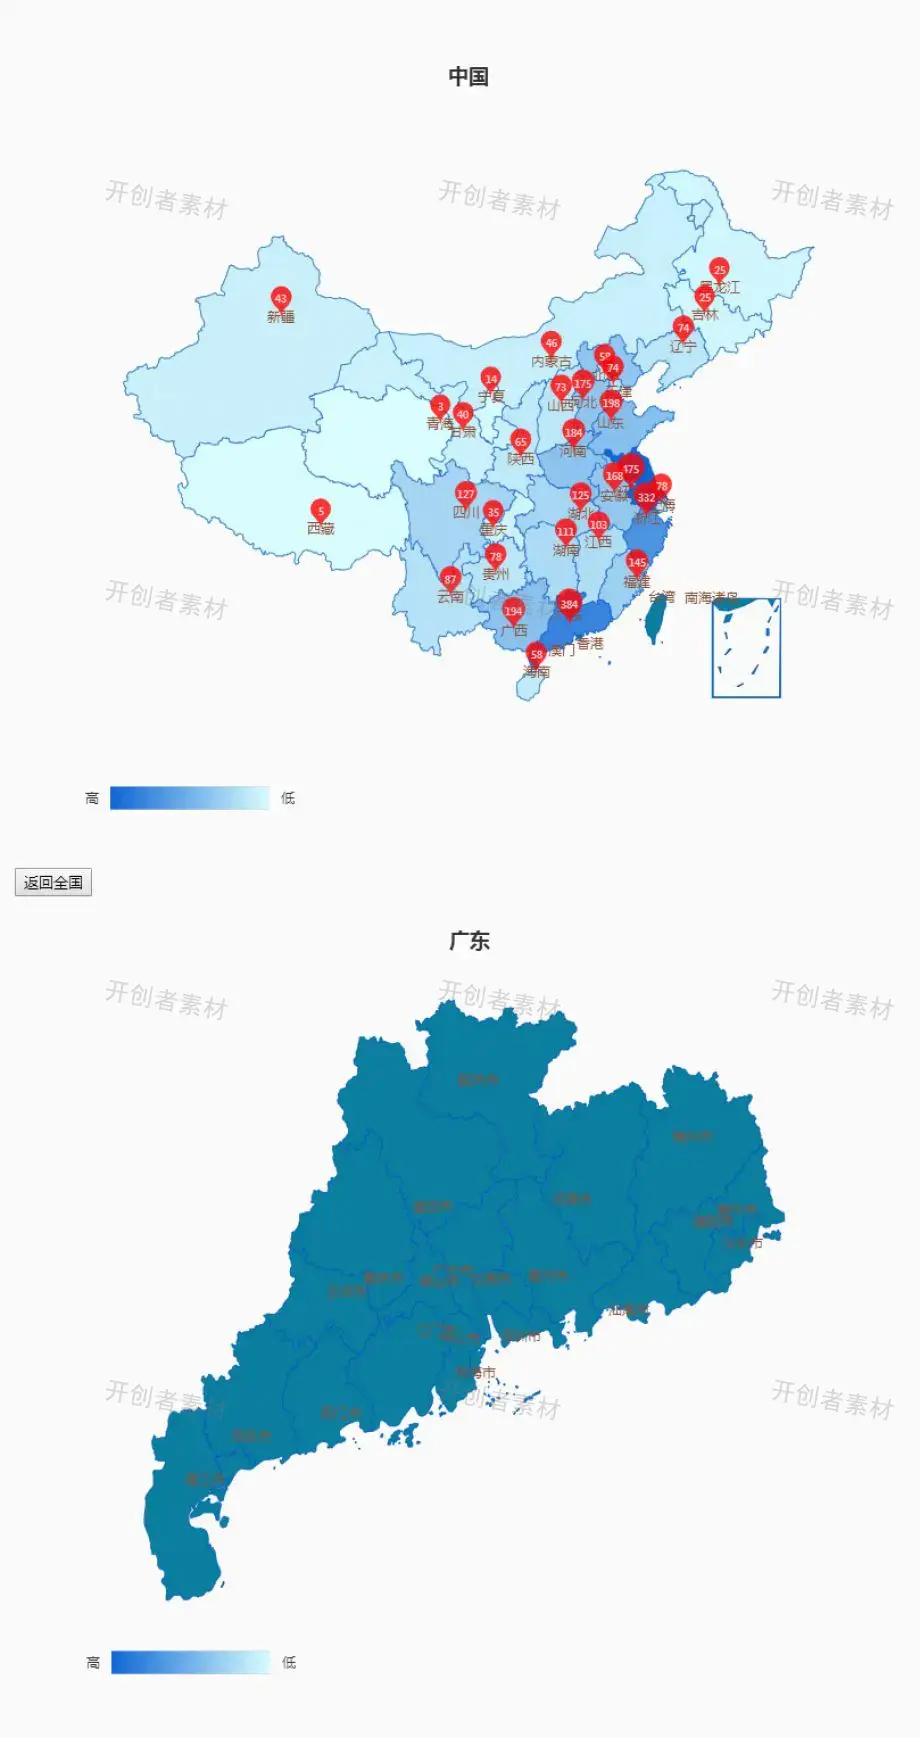 中国全国地图和每个省份地图自由切换显示jquery插件